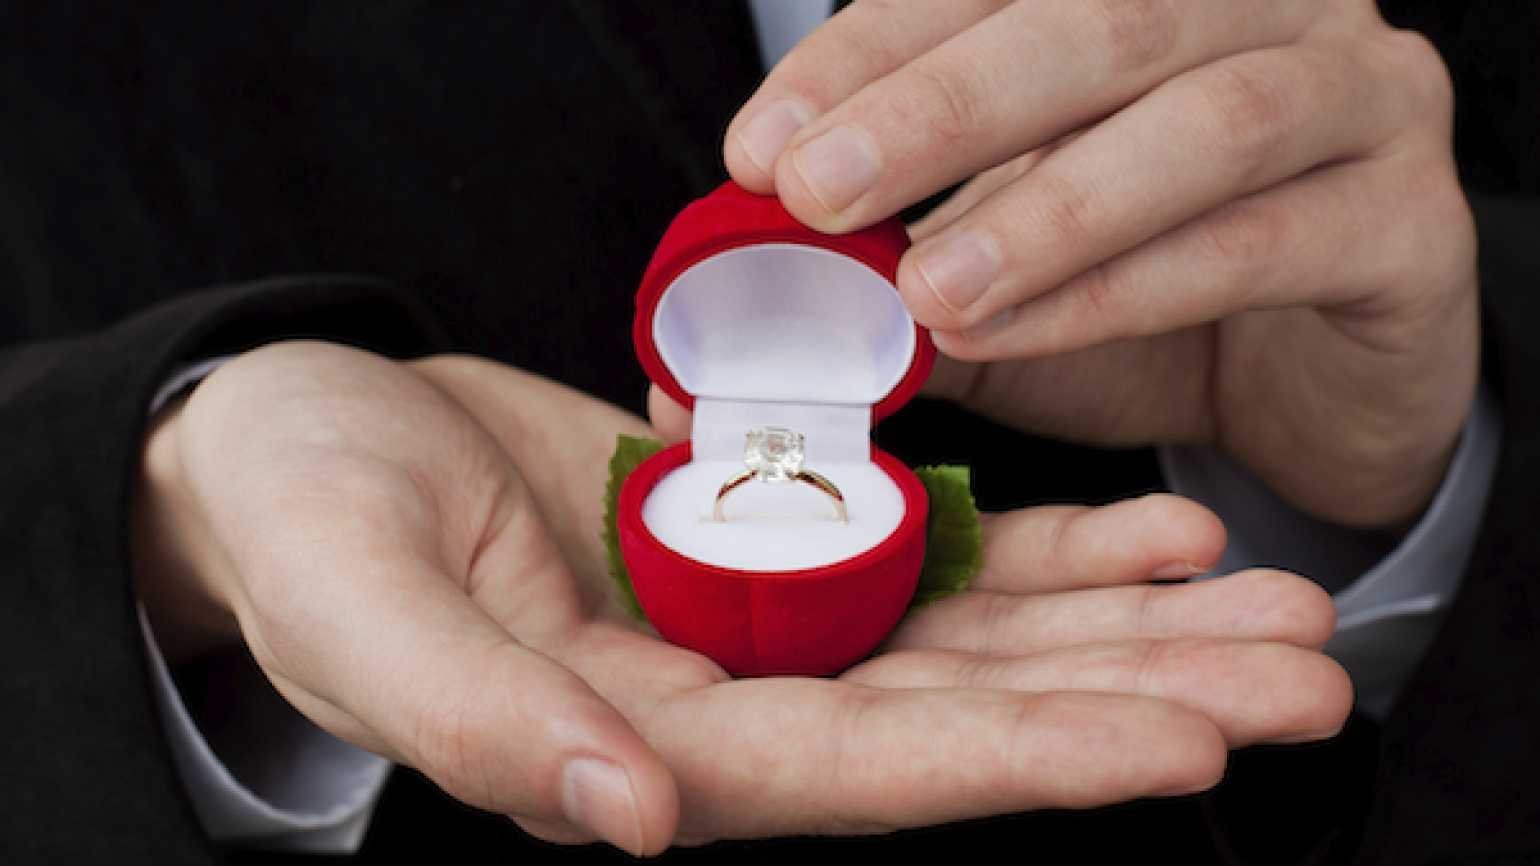 Получить кольцо в подарок. Кольцо для предложения. Кольцо для предложения девушке. Подарок кольцо девушке. Кольцо в коробочке для предложения.